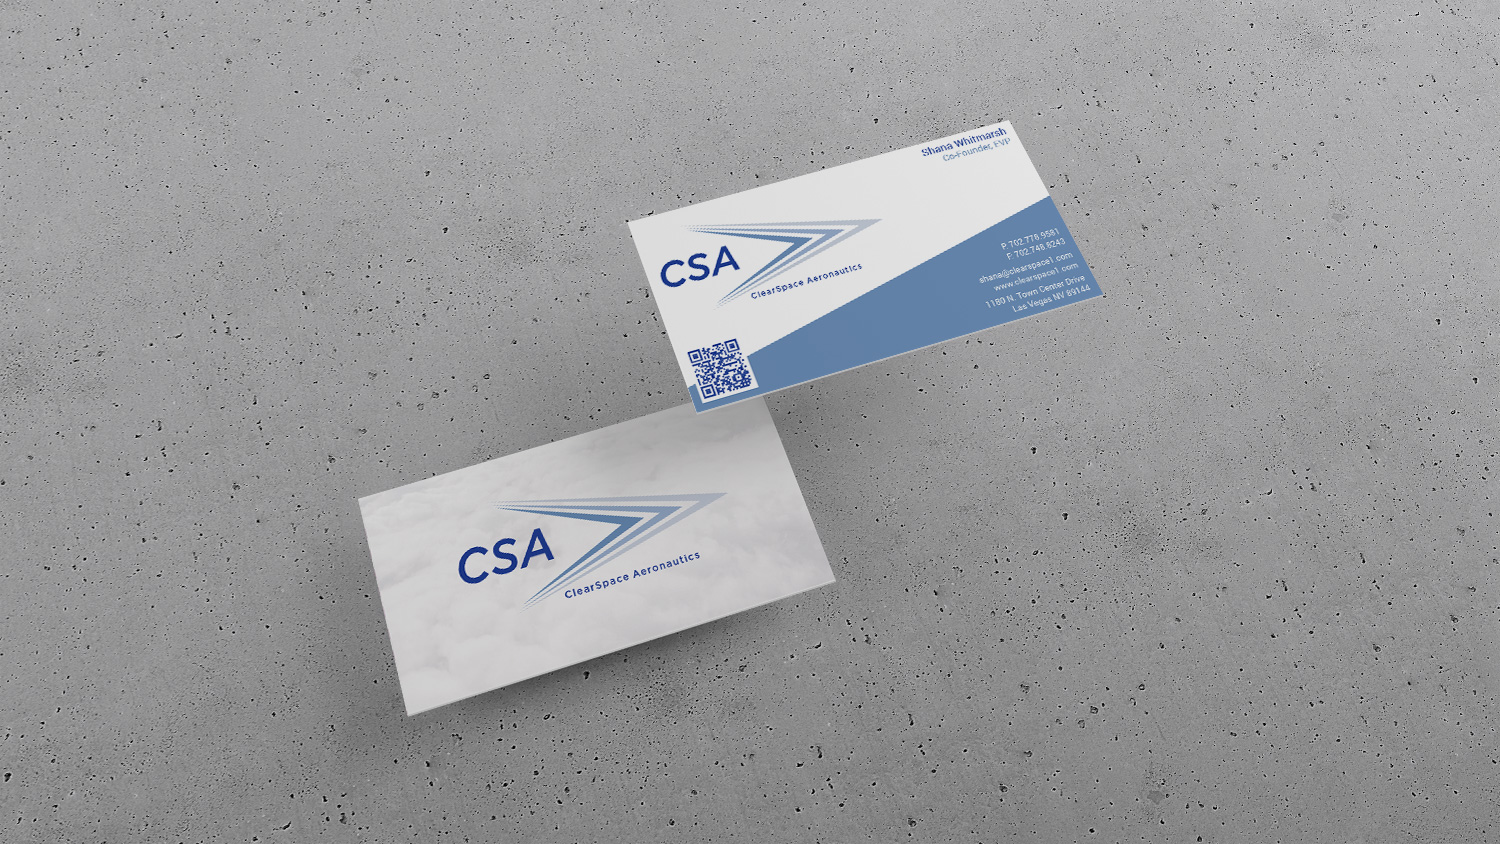 Chromacor designed CSA's business cards